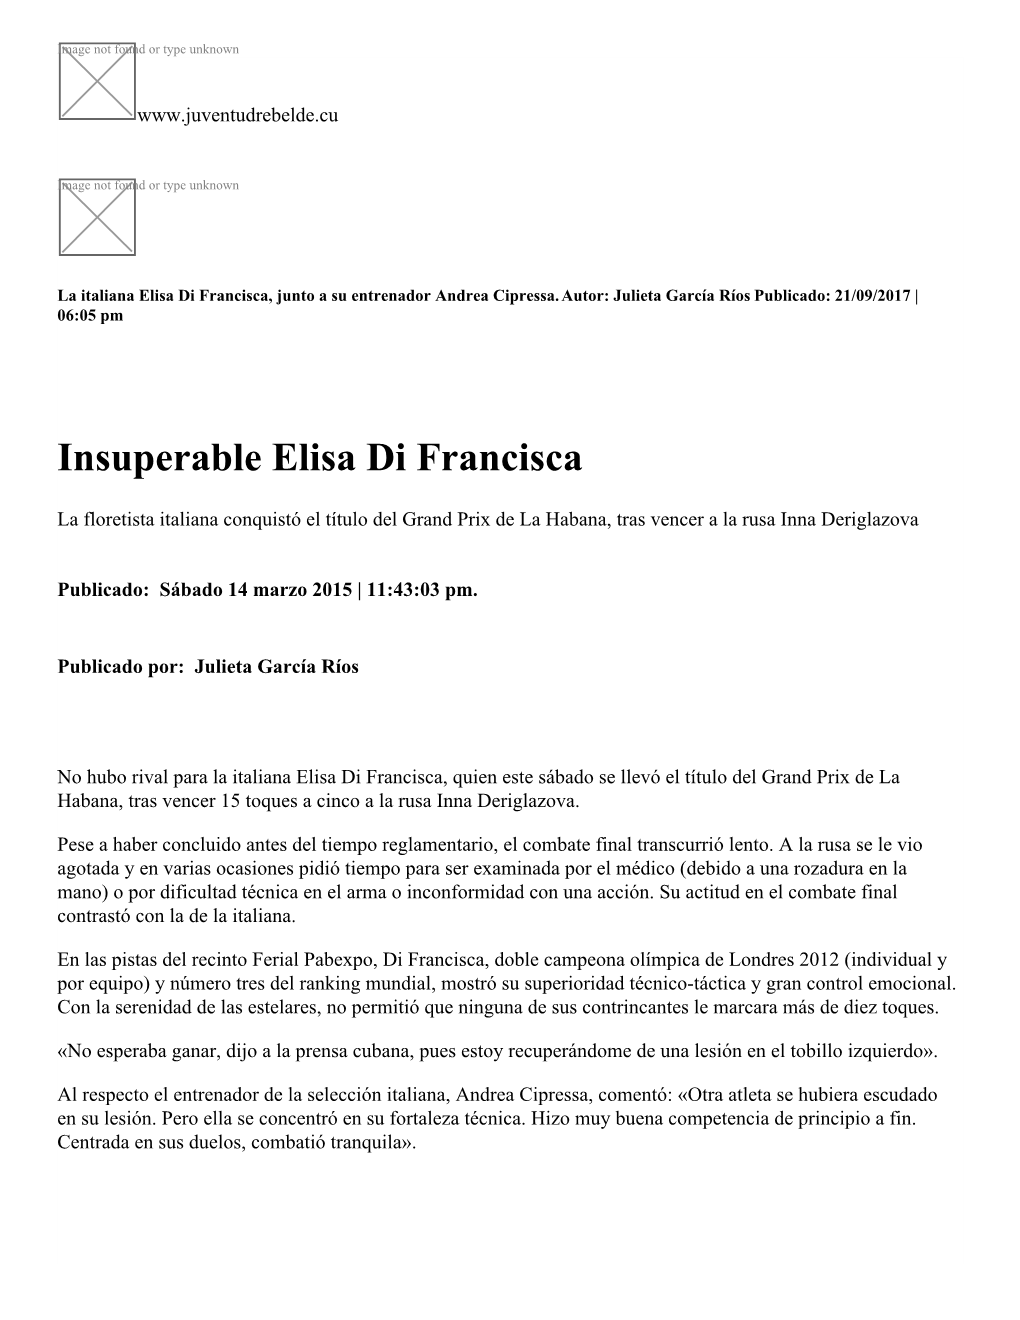 Insuperable Elisa Di Francisca